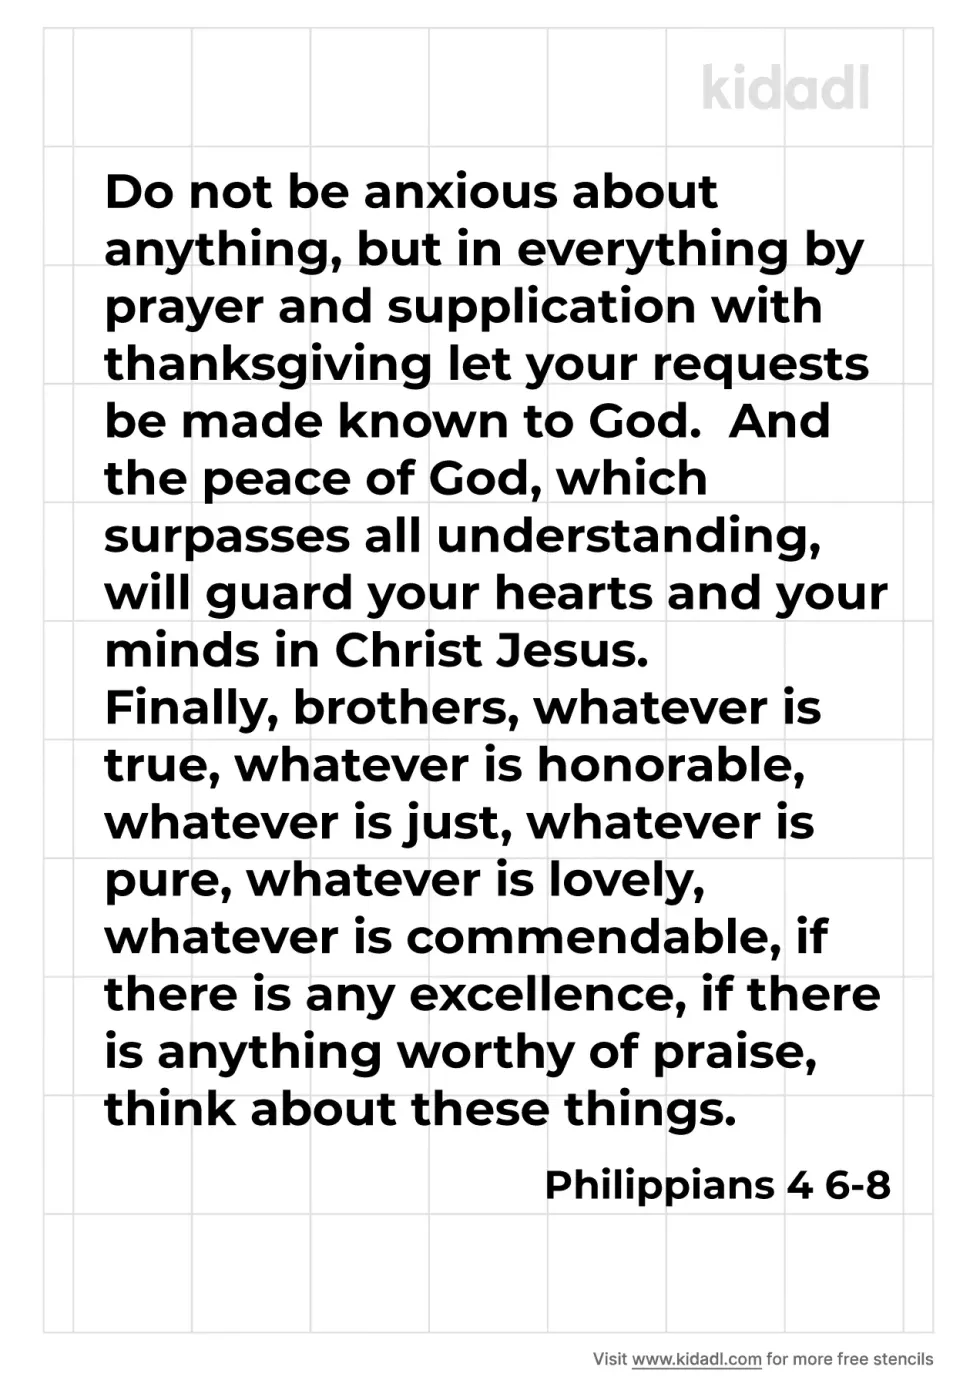 Philippians 4 6-8